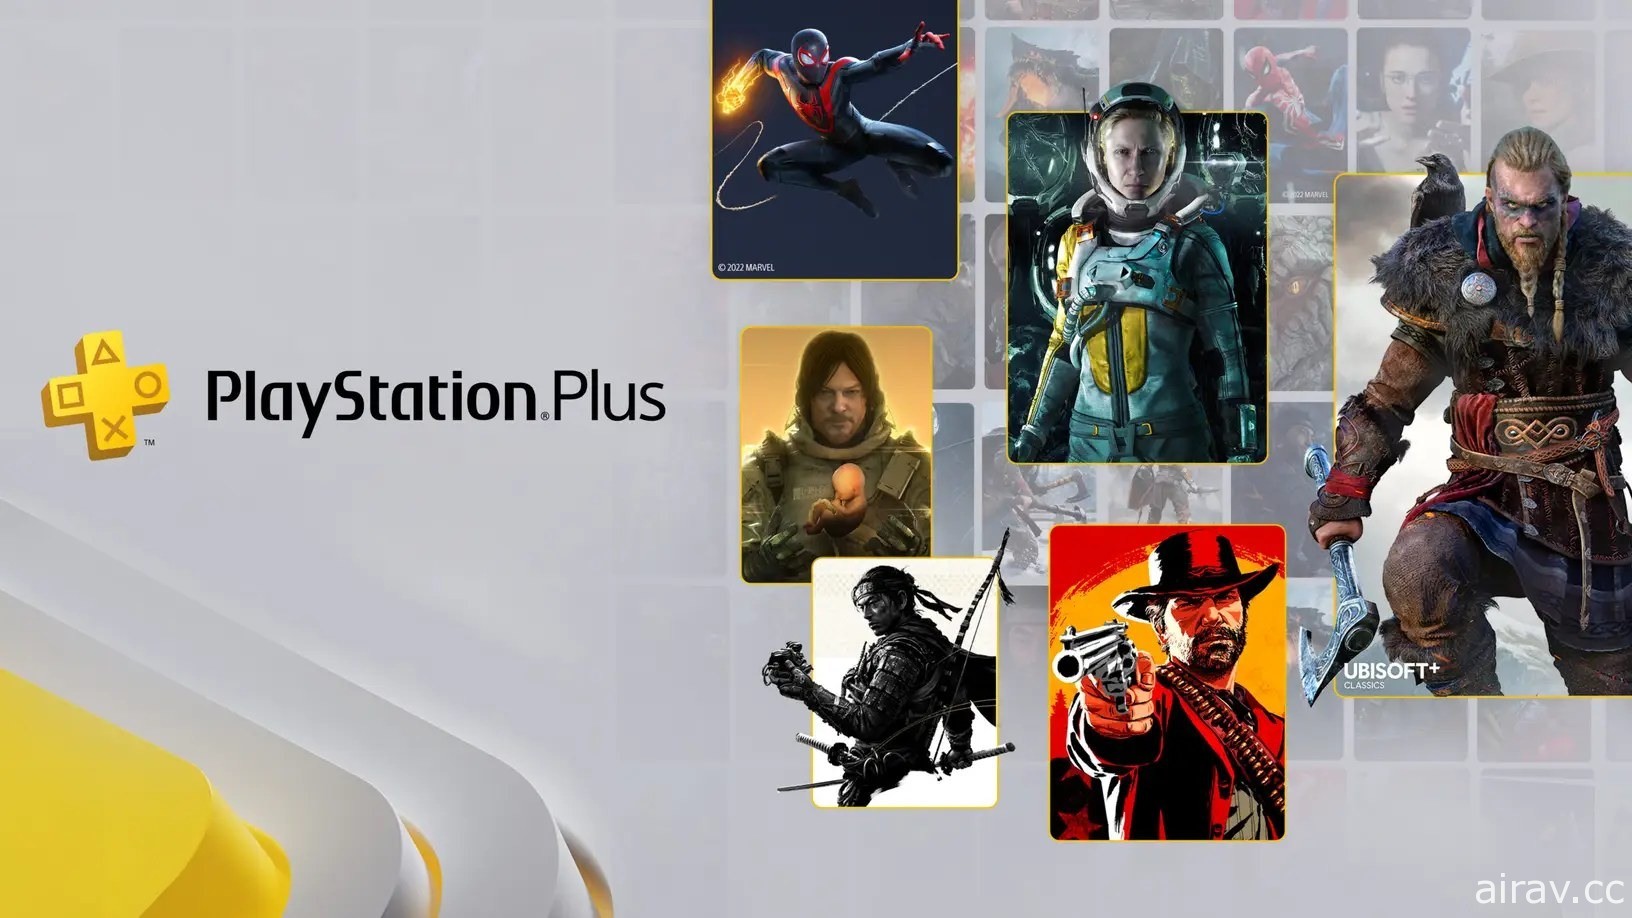 全新 PlayStation Plus 订阅服务公布游戏阵容 将包含《对马战鬼》《刺客教条》等众多 3A 大作